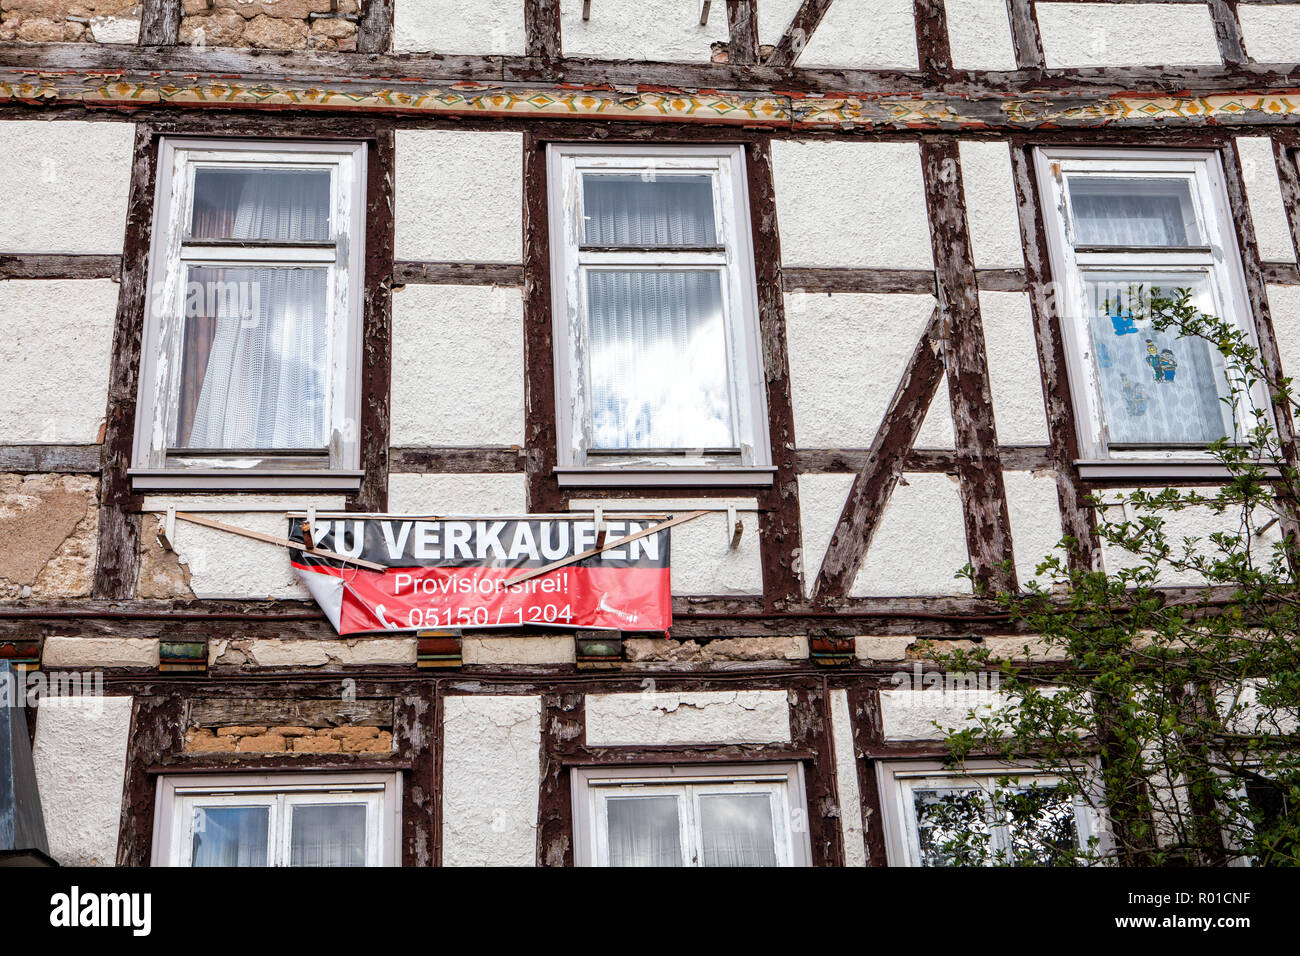 Maison à vendre, mauvais état, Bodenwerder, Weserbergland, Basse-Saxe, Allemagne, Europe Banque D'Images